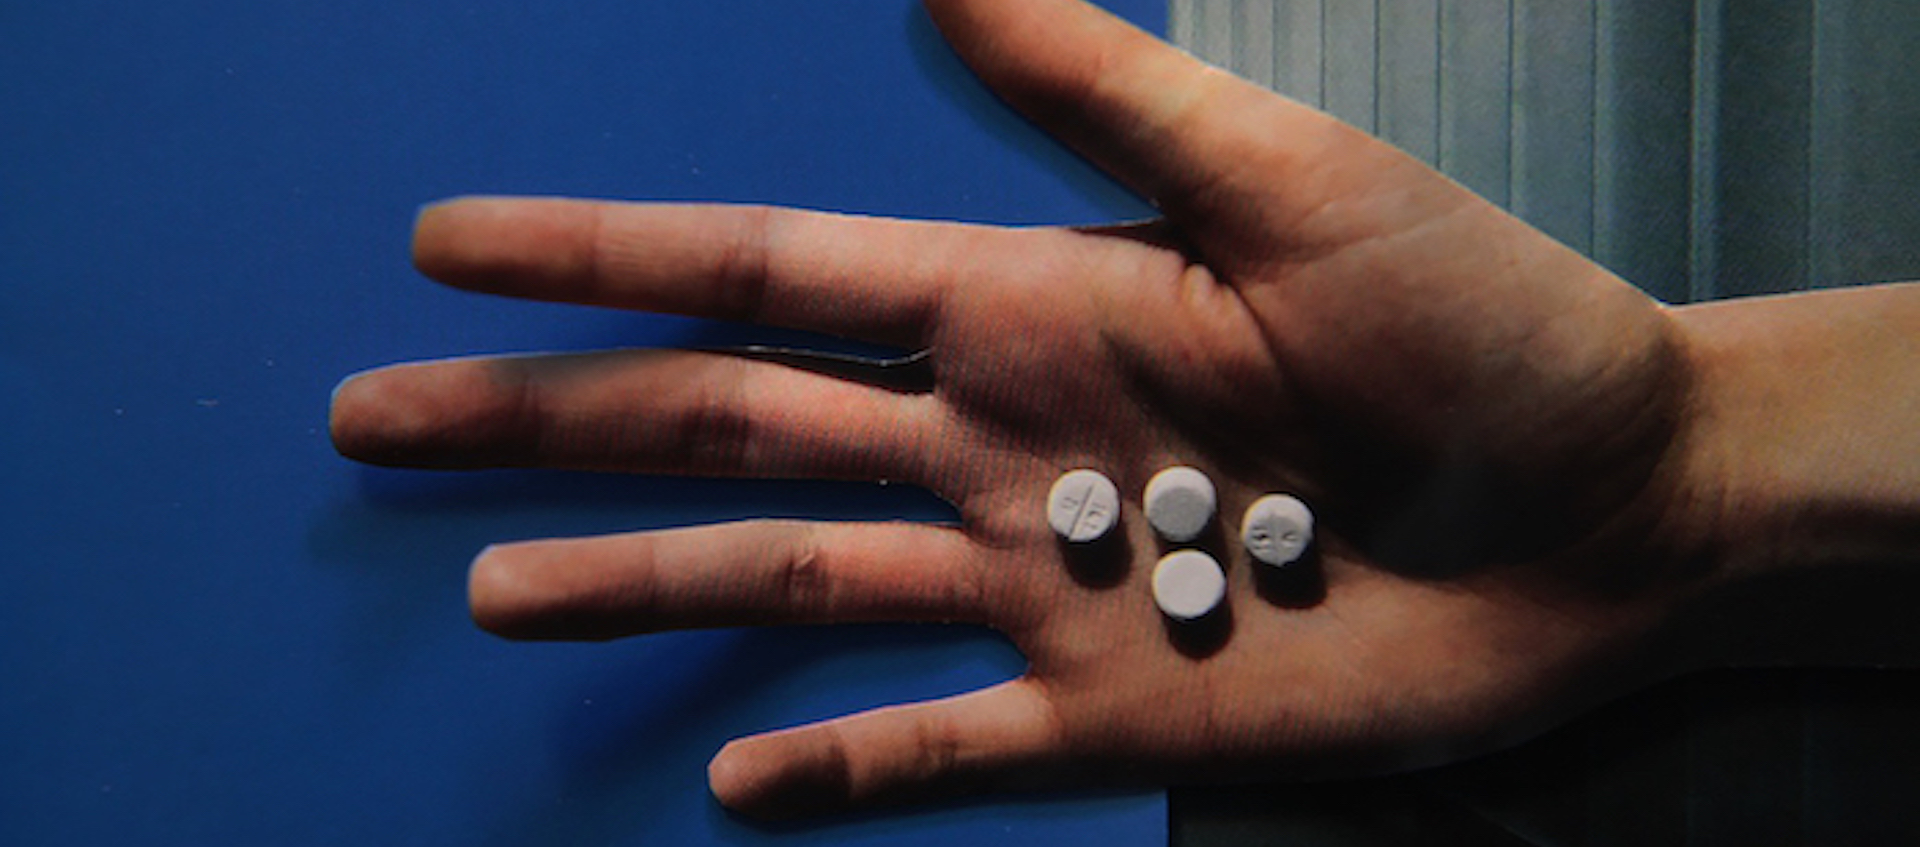 Hand holding pills from Lewis Klahr's Circumstantial Pleasures